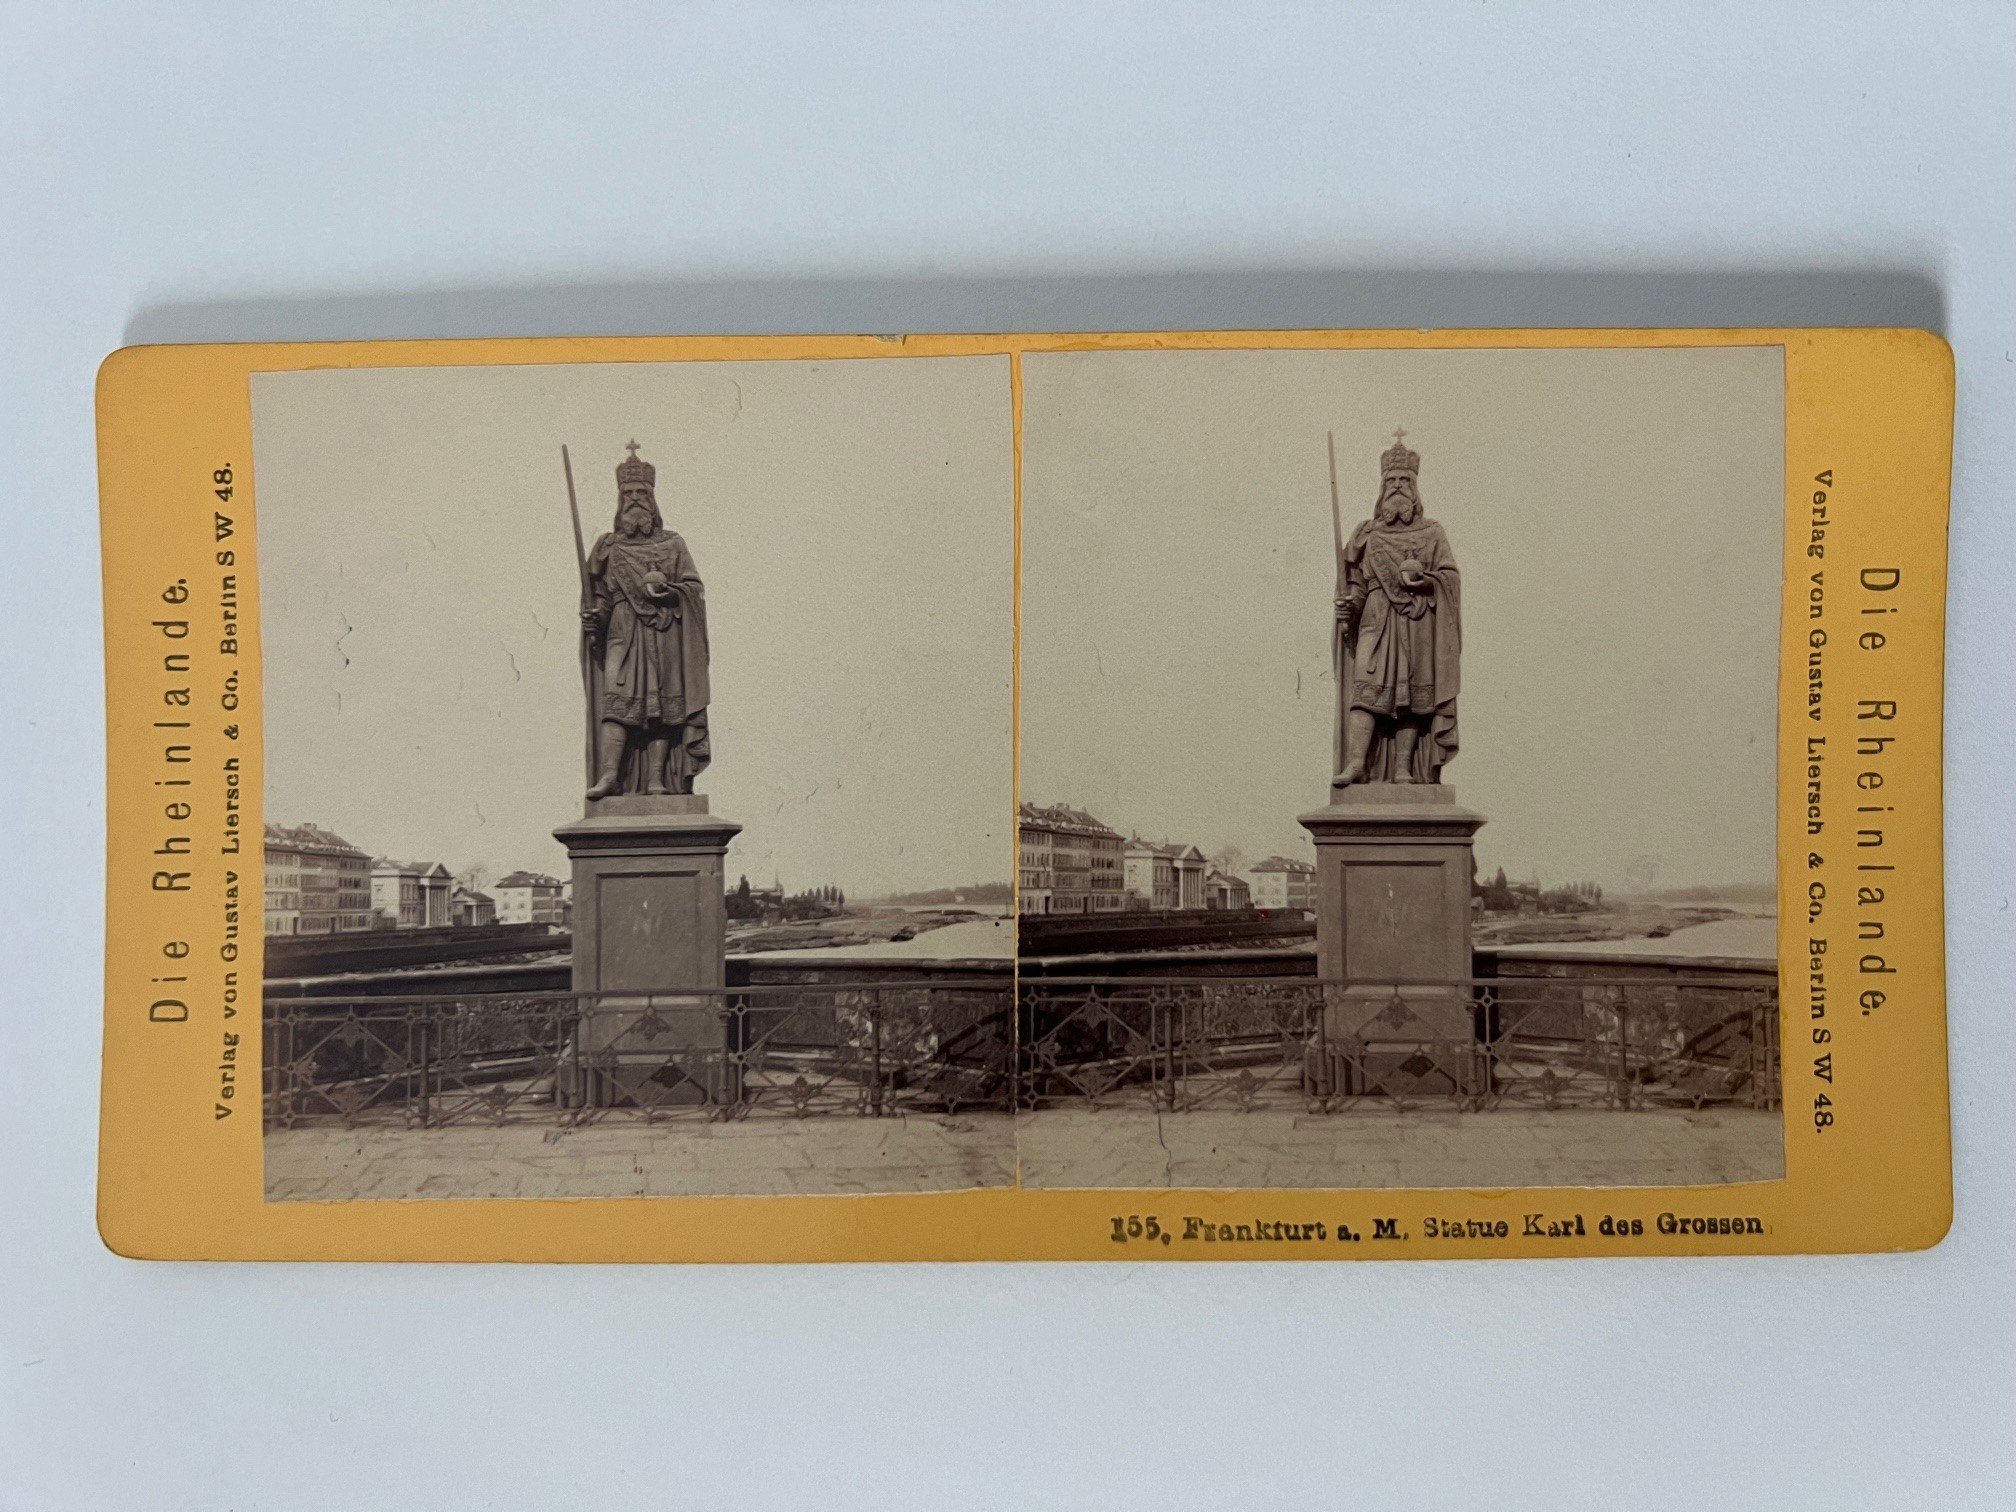 Stereobild, Verlag Gustav Liersch, Frankfurt, Nr. 155, Statue Karl des Grossen, ca. 1881. (Taunus-Rhein-Main - Regionalgeschichtliche Sammlung Dr. Stefan Naas CC BY-NC-SA)